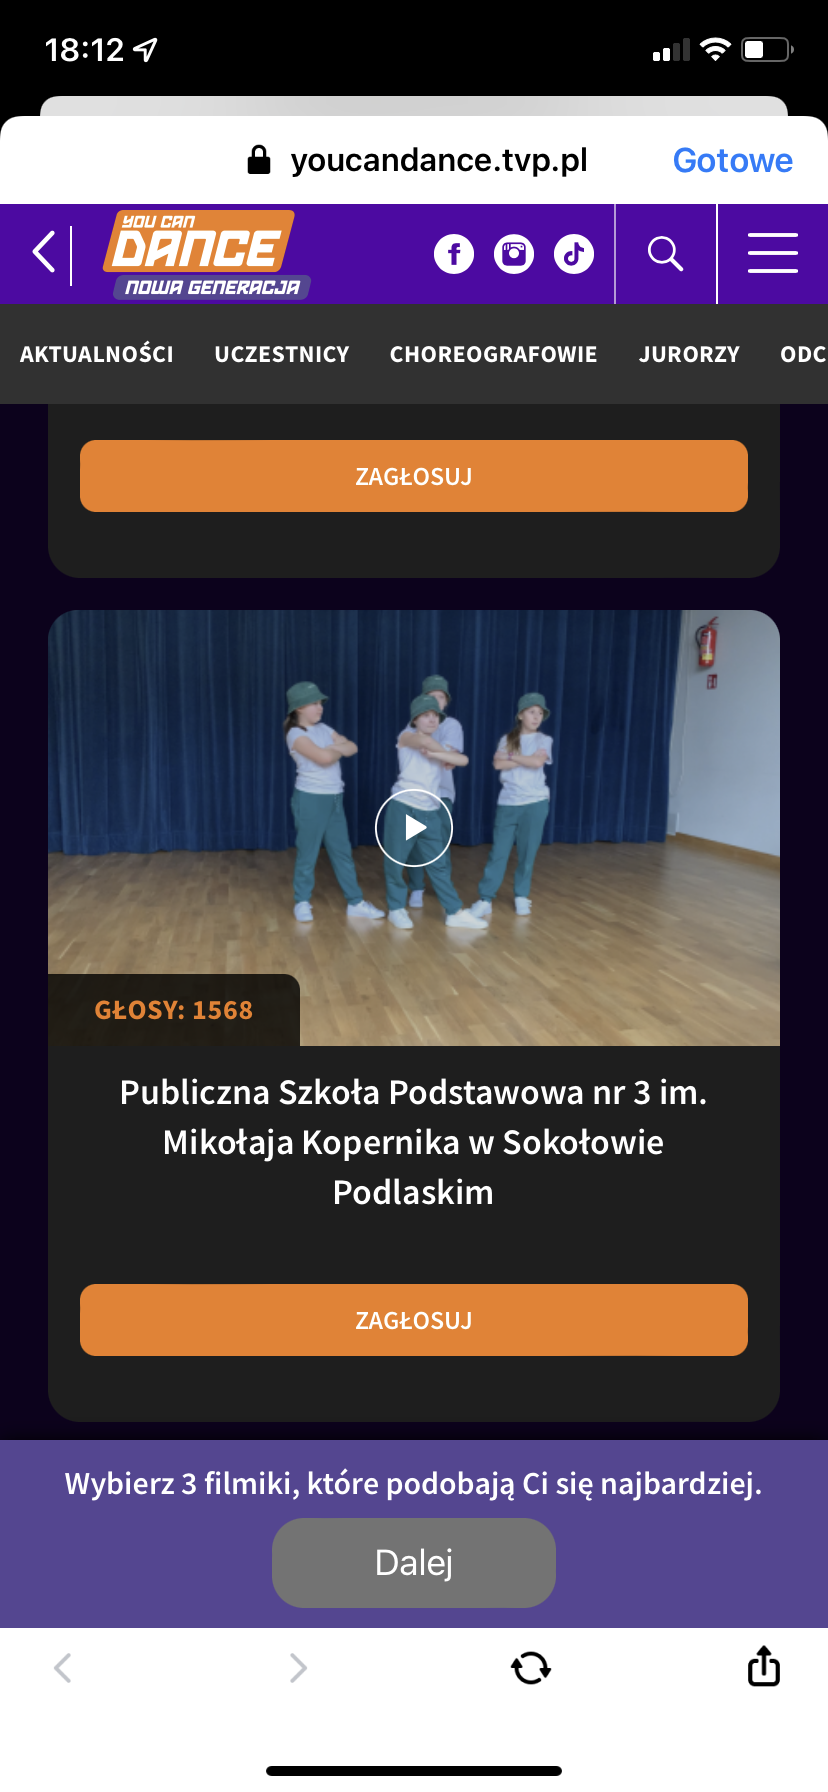 zrzut ekranu z aplikacji na telefon z otwartą stroną głosowania